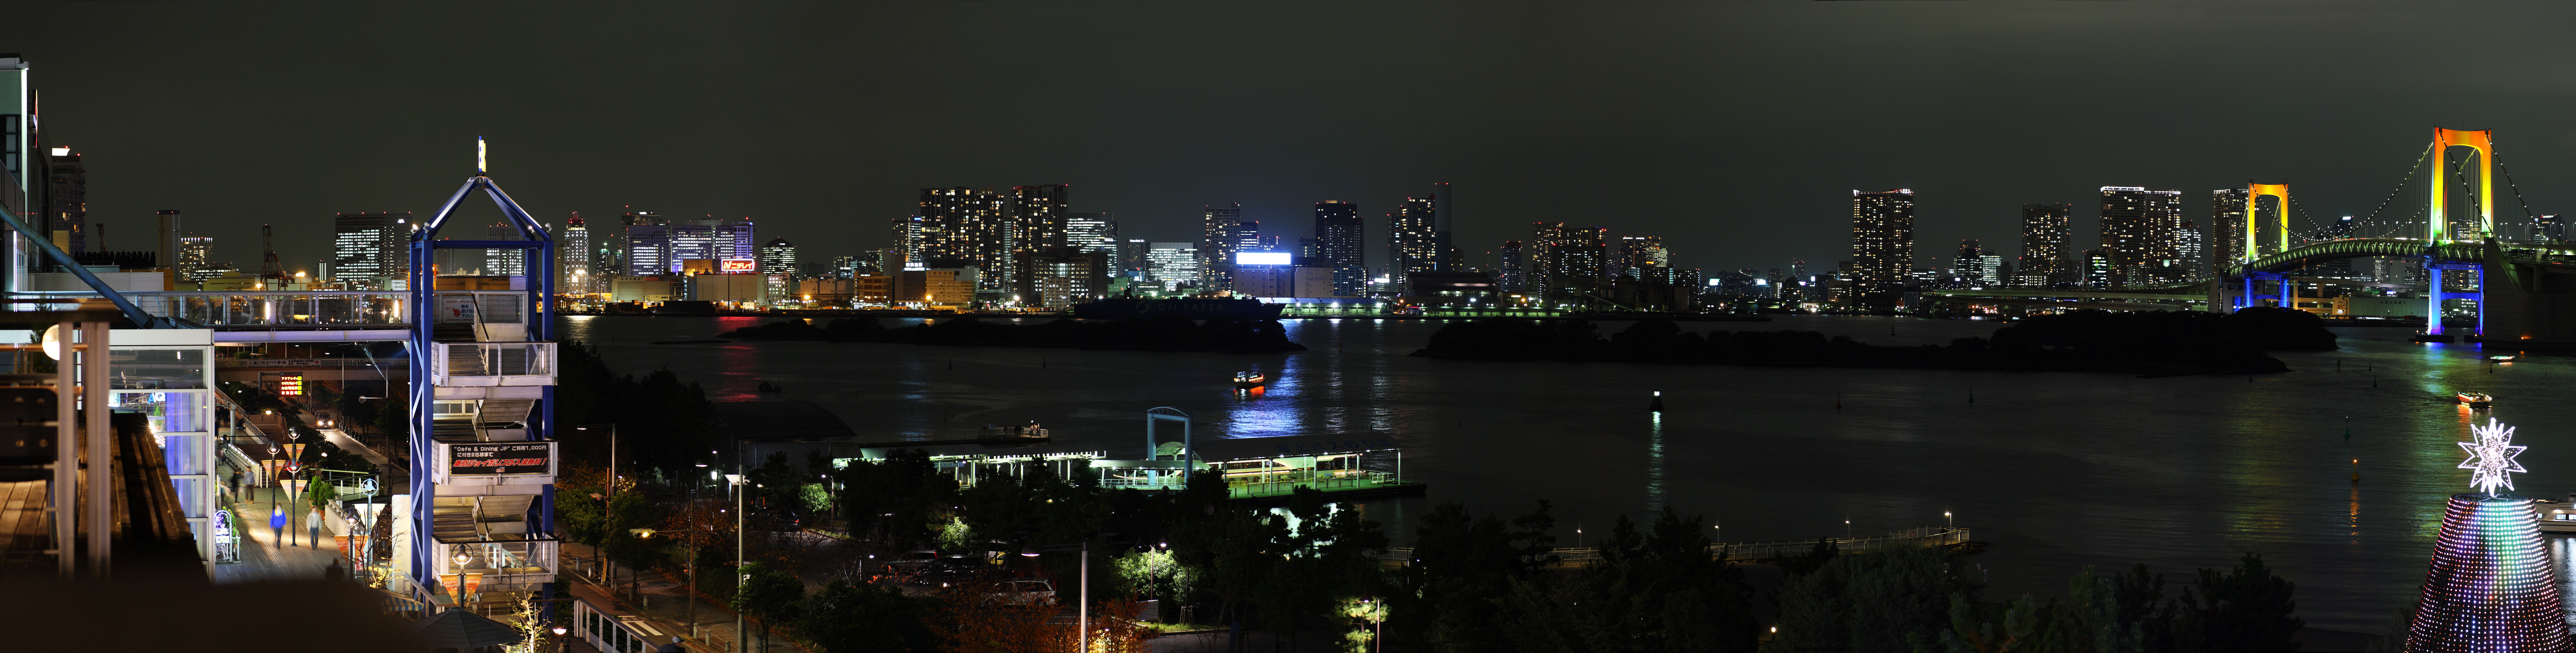 fotografia, materiale, libero il panorama, dipinga, fotografia di scorta,Una prospettiva serale di Odaiba, ponte, gioiello, sia insieme corso, la spiaggia svilupp di recente centro urbano